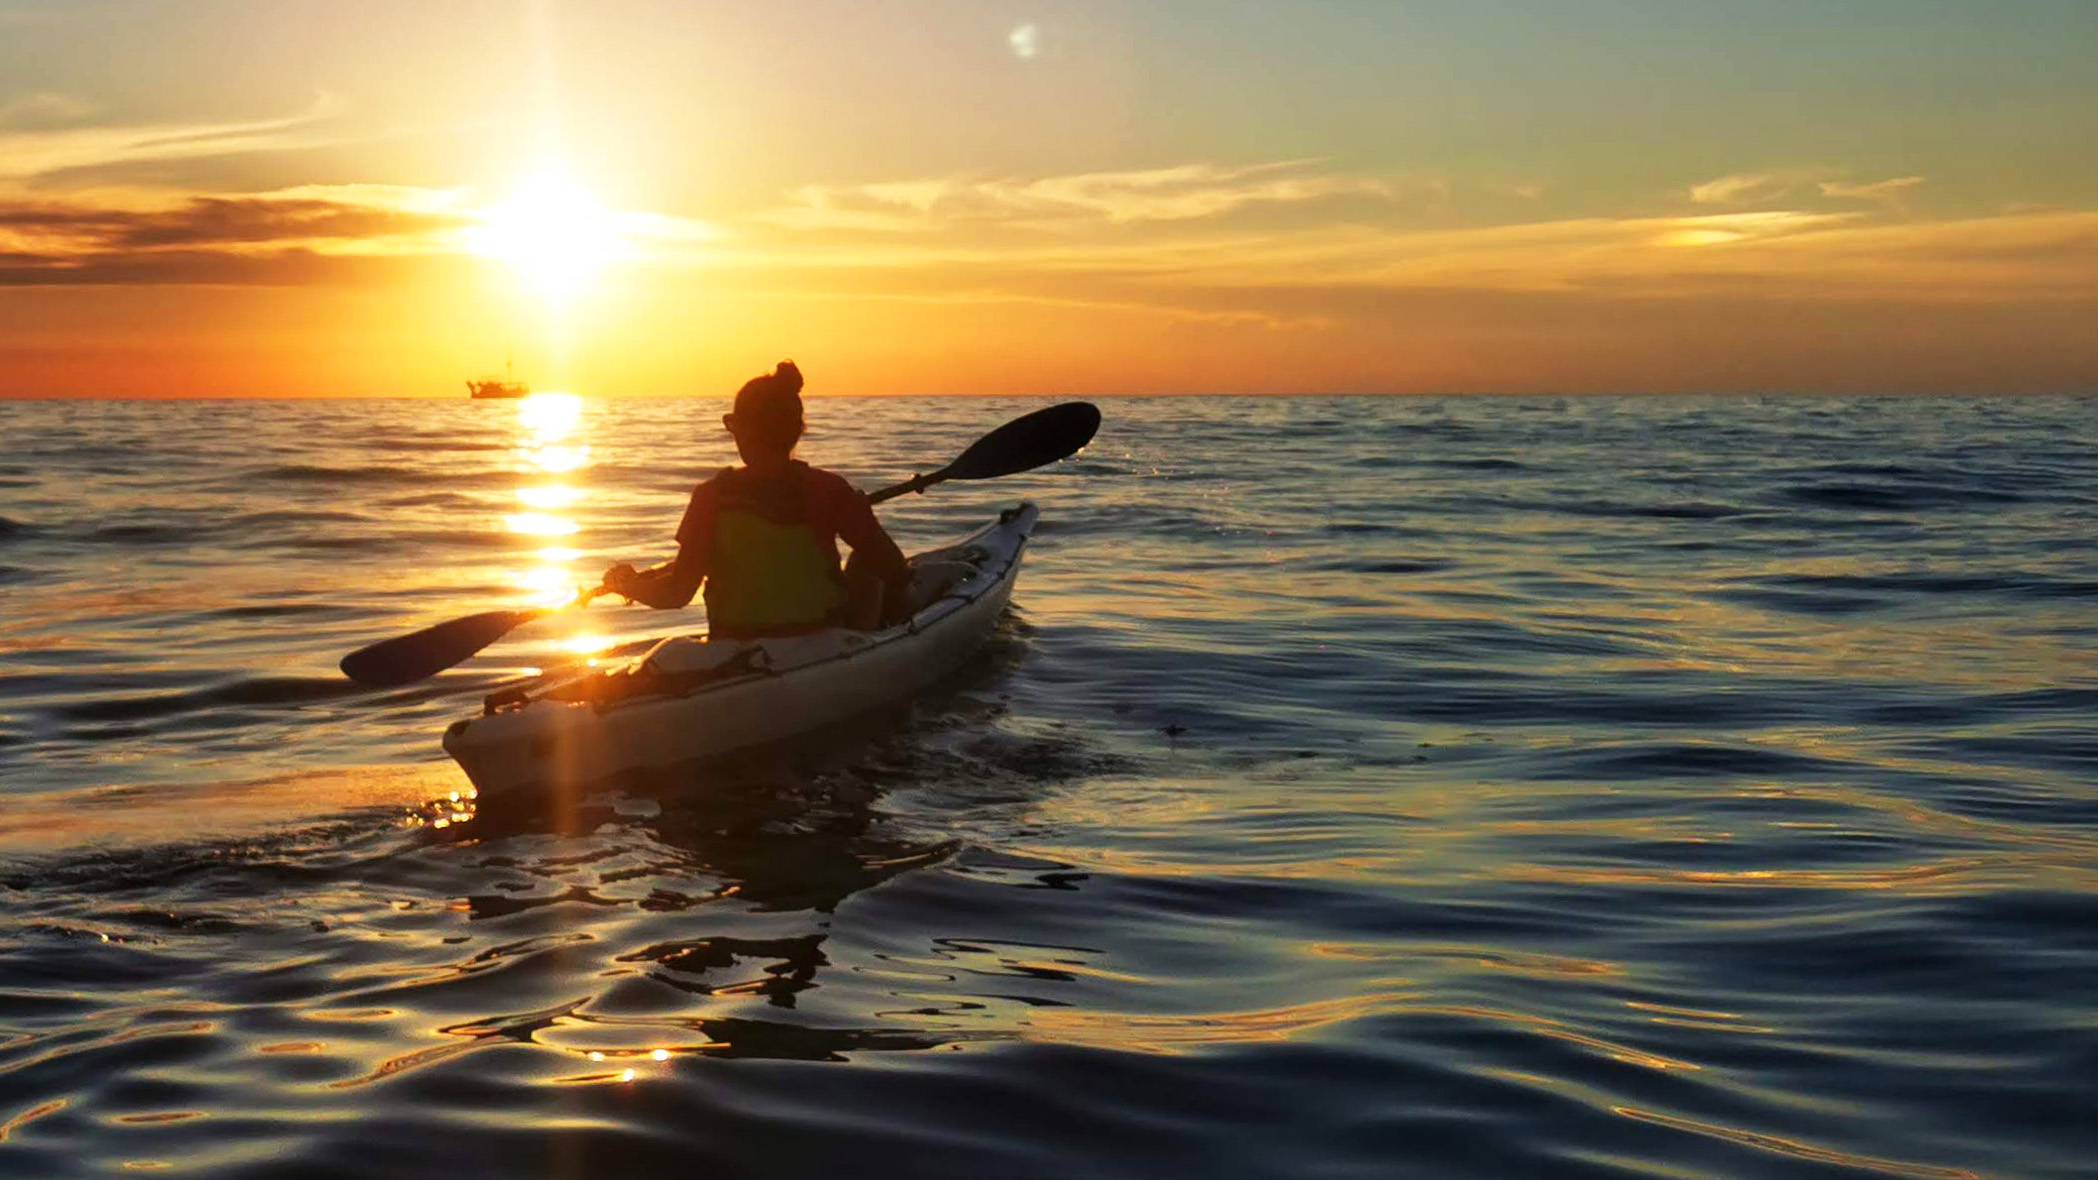 Sunset Sea Kayaking Tour